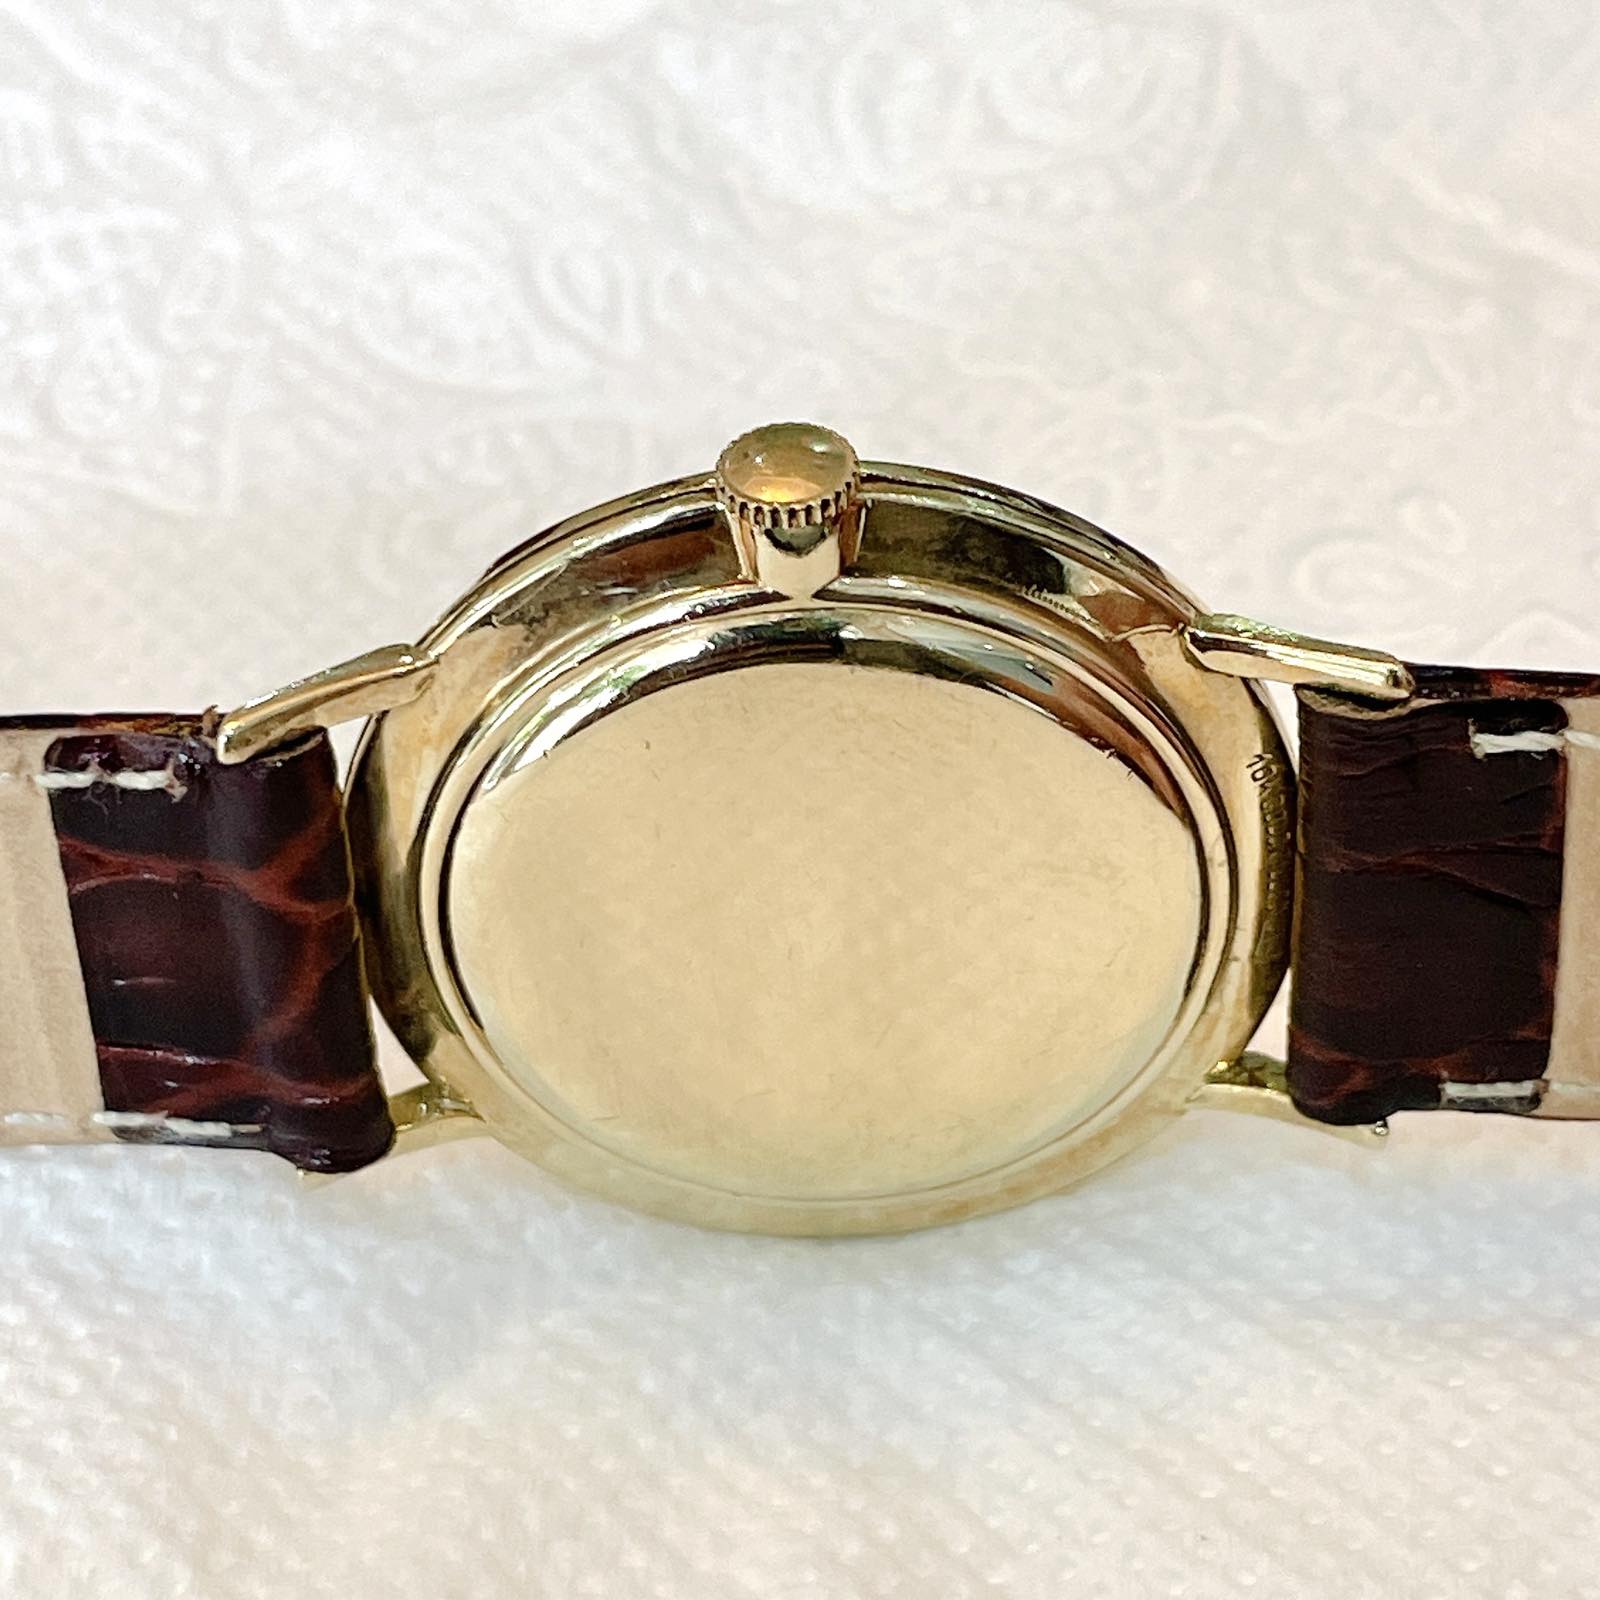 Đồng hồ cổ Longines kim đĩa lên dây bọc vàng 10k chính hãng thụy Sĩ 